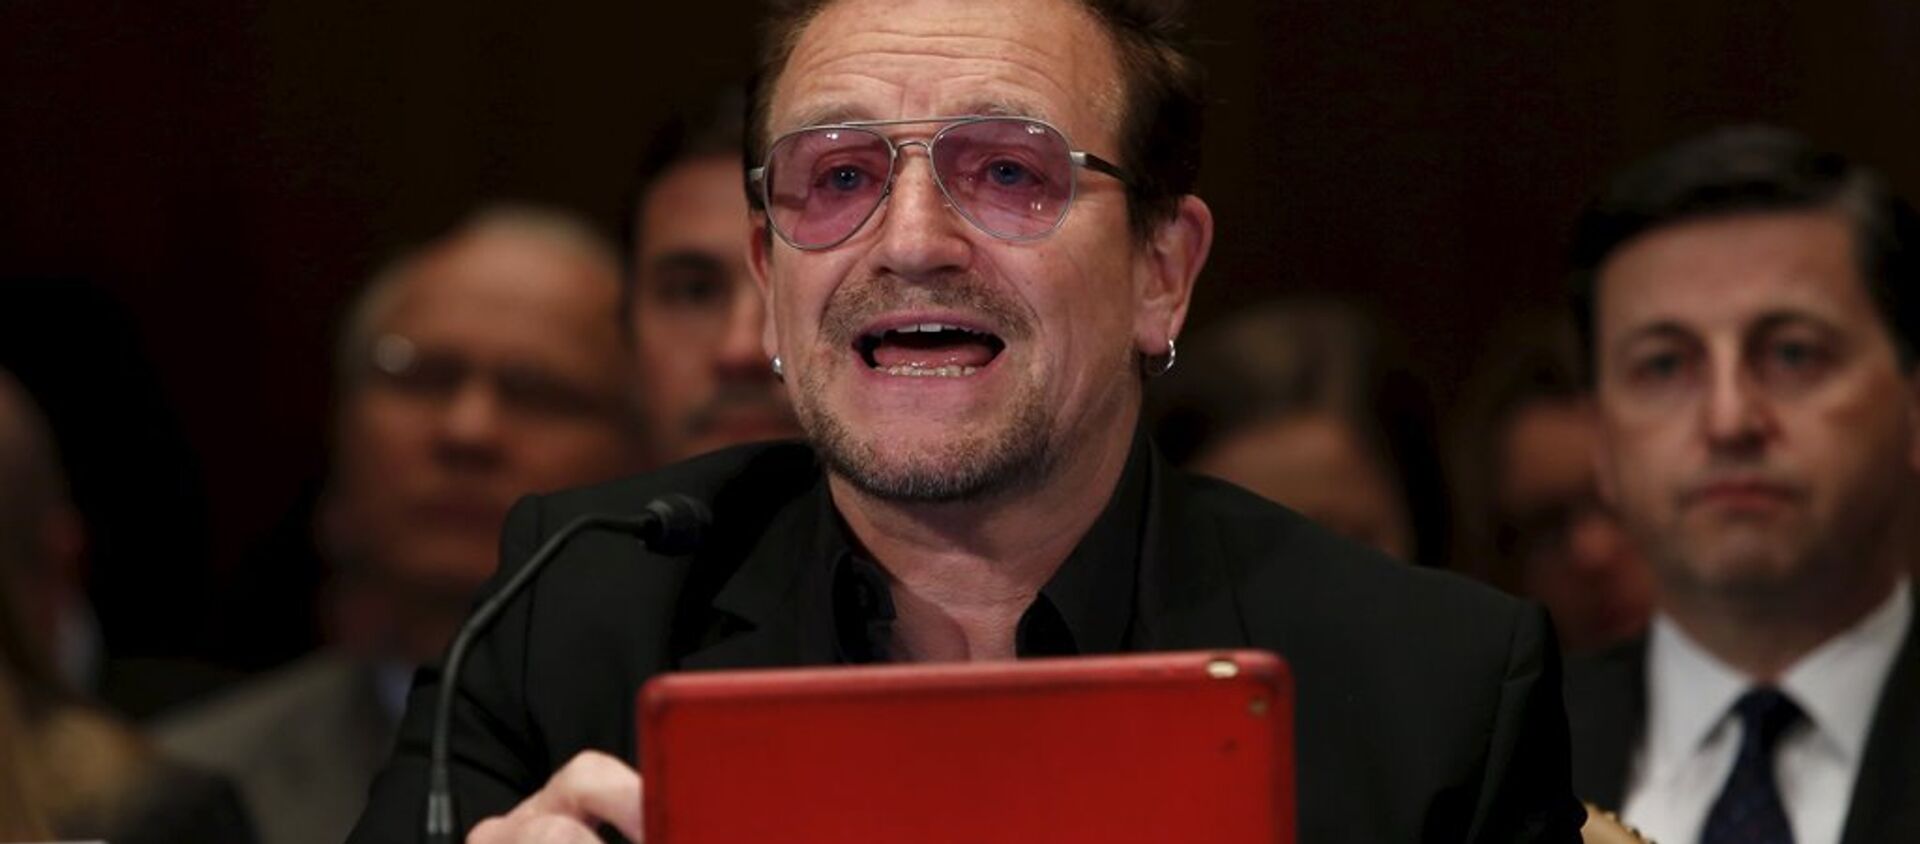 İrlandalı ünlü U2 grubunun solisti Bono, ABD Senatosu Tahsisat Komitesi’nin Ortadoğu’da aşırıcılıkla mücadele konulu toplantısına katıldı. - Sputnik Türkiye, 1920, 13.04.2016